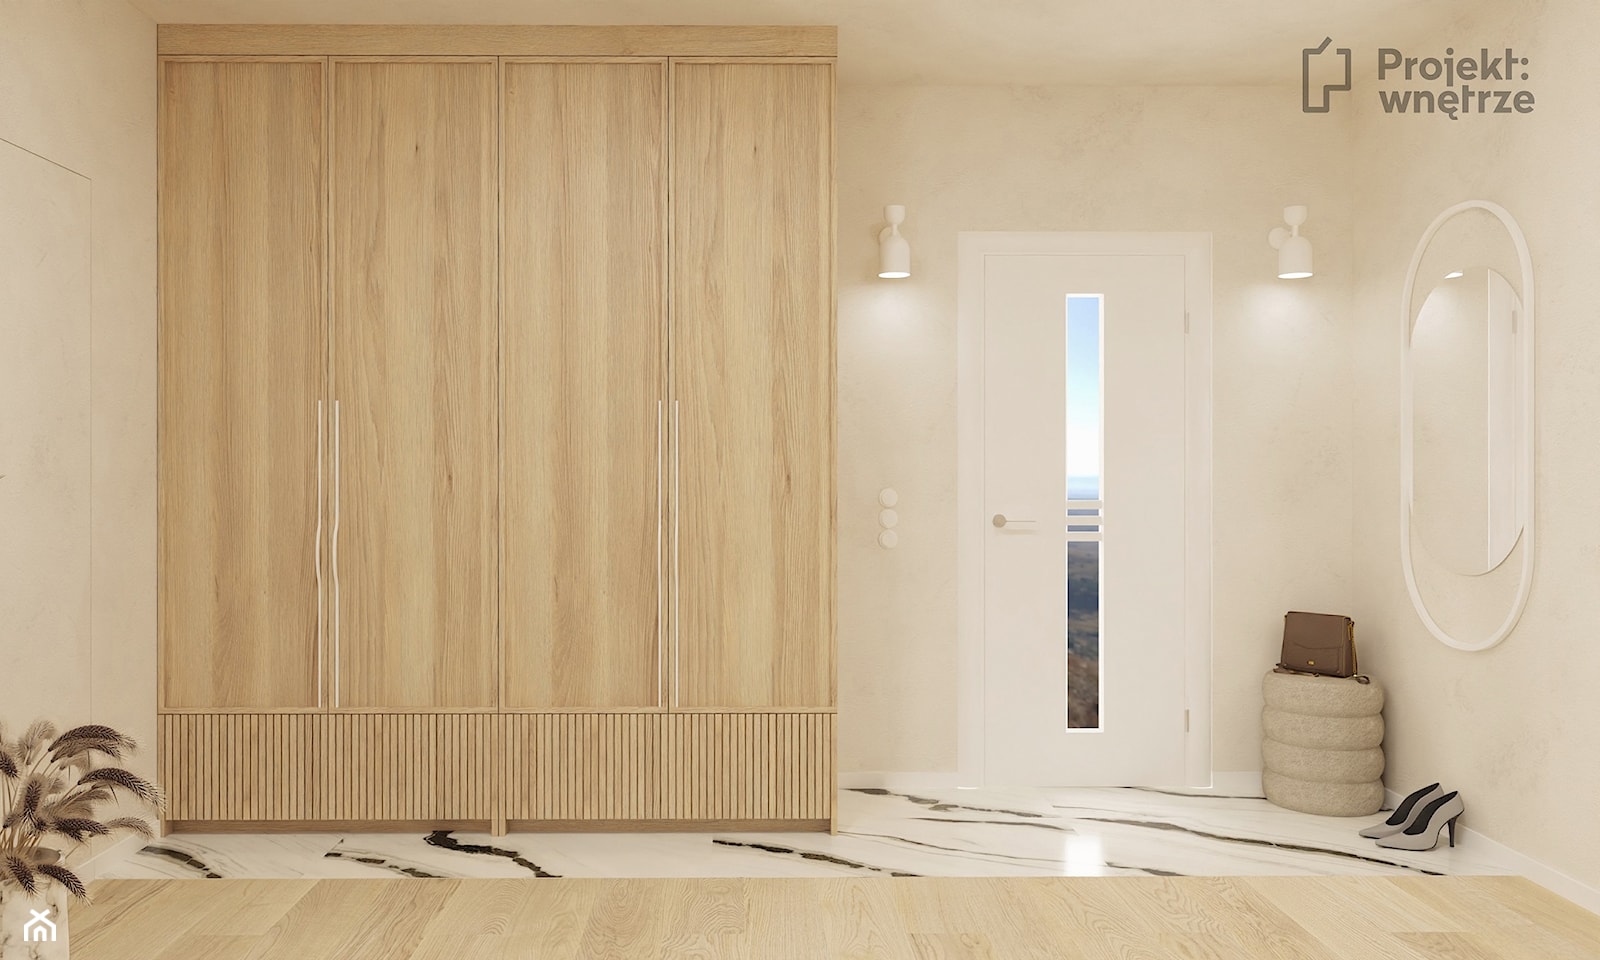 Duży beżowy hol / przedpokój biały z szafą japandi styl nowoczesny z lustrem z siedziskiem ze schodami z zabudową meblową jasne drewno struktura dekoracyjna drzwi ukryte - PROJEKT: WNĘTRZE projektwnet - zdjęcie od PROJEKT: WNĘTRZE - Homebook